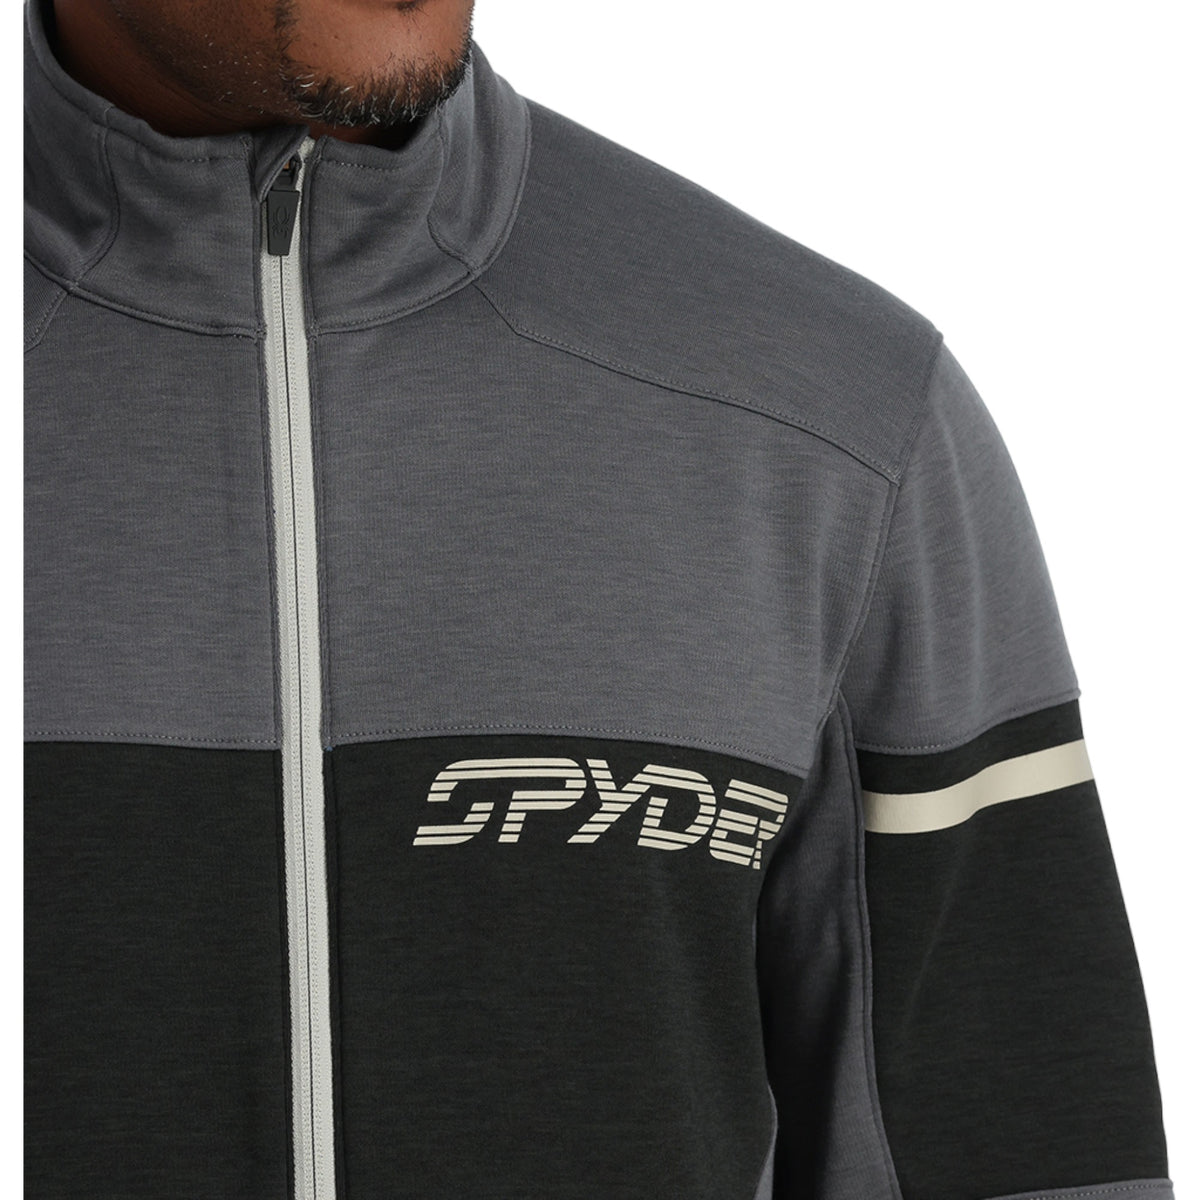 Spyder, Wengen encore full zip fleece jacket men ebony grey Ski Wear